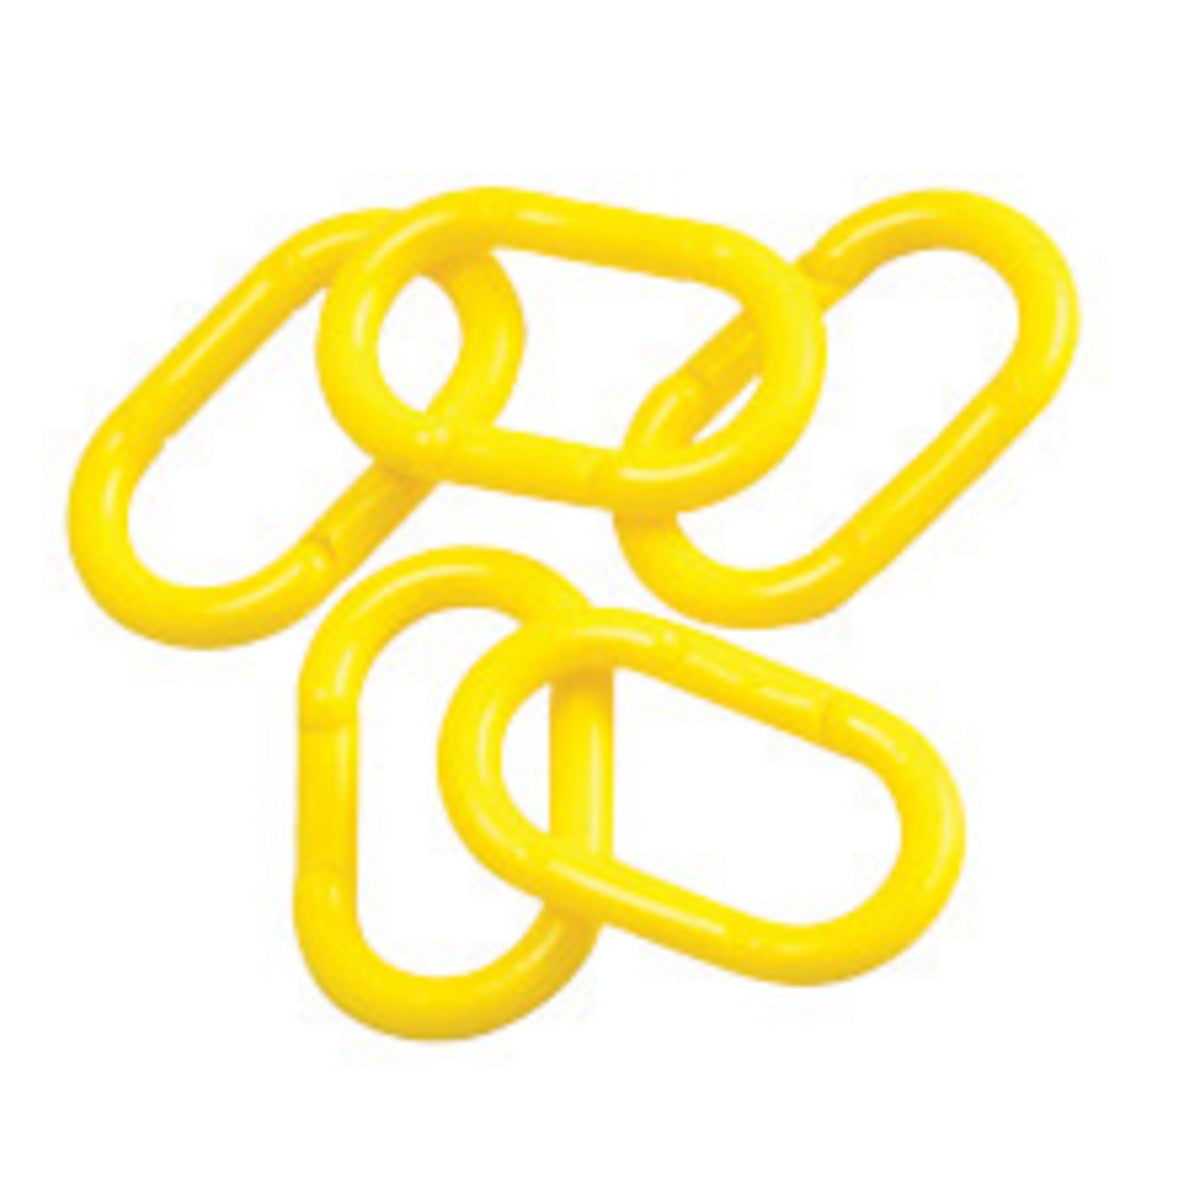 Brady ® 2" Yellow Polyethylene Bradylink Replacement Chain Link